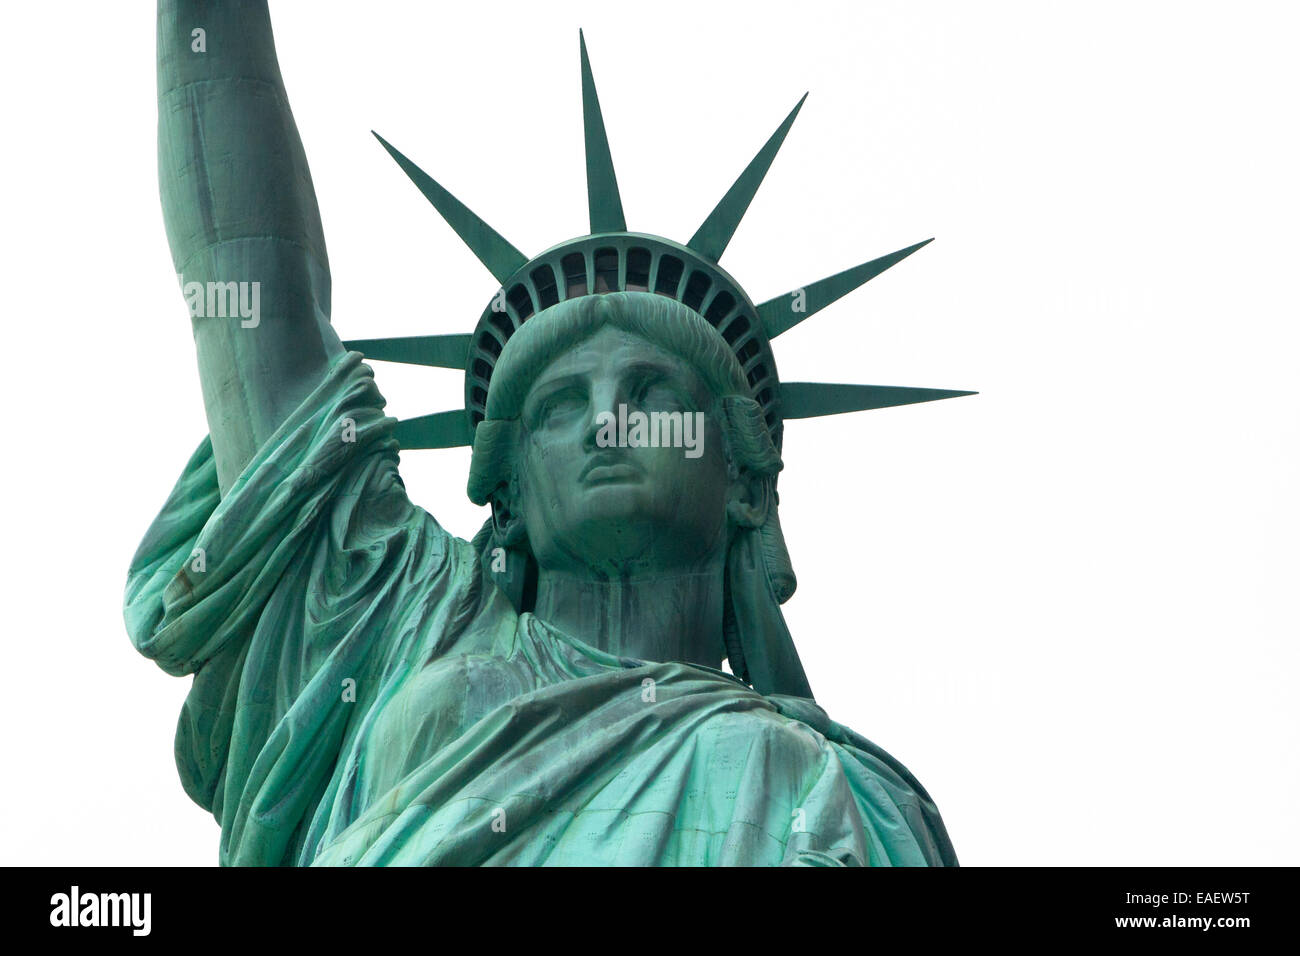 Freiheitsstatue Statue of Liberty New York Manhatten USA Architektur Wahrzeichen Beruehmt Amerika Attraktion Crown Krone Fackel Stock Photo